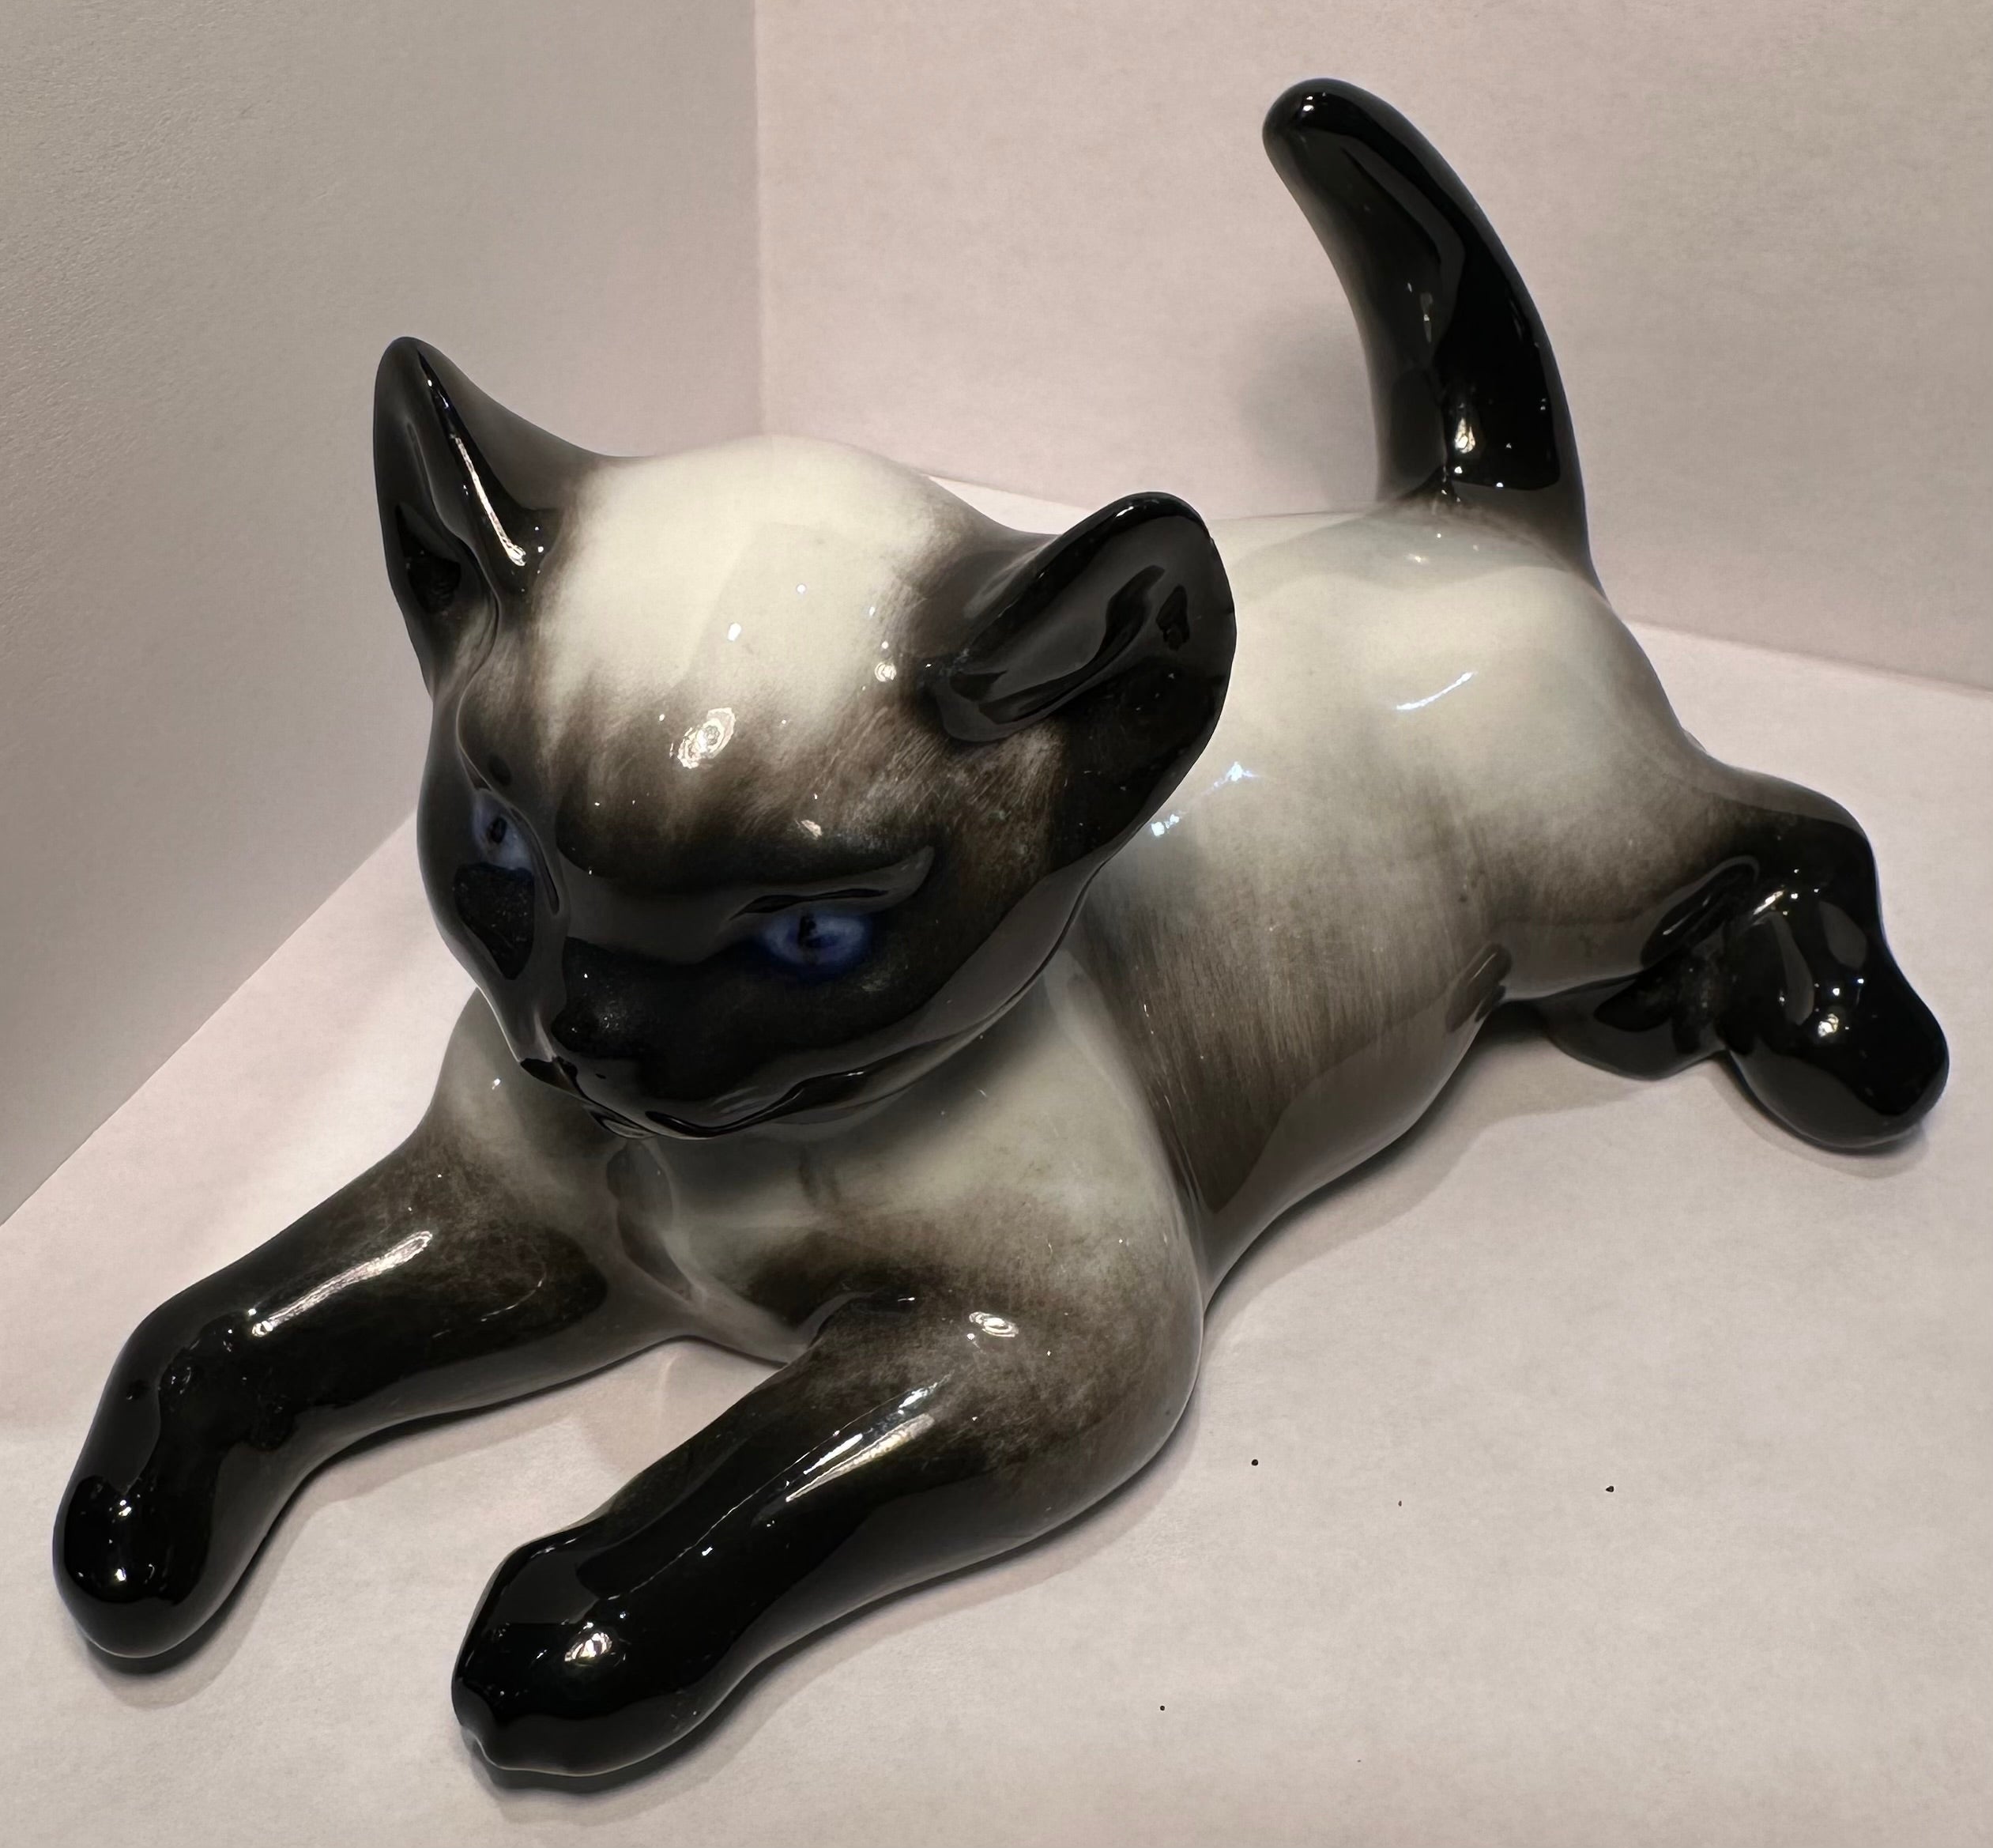 
Figurine de chat siamois en porcelaine de Rosenthal de la meilleure qualité, ancienne, faite et peinte à la main en Allemagne, conçue par le célèbre artiste allemand décédé, Fritz Heidenreich (1895-1966). Le chat a été fabriqué et peint à la main